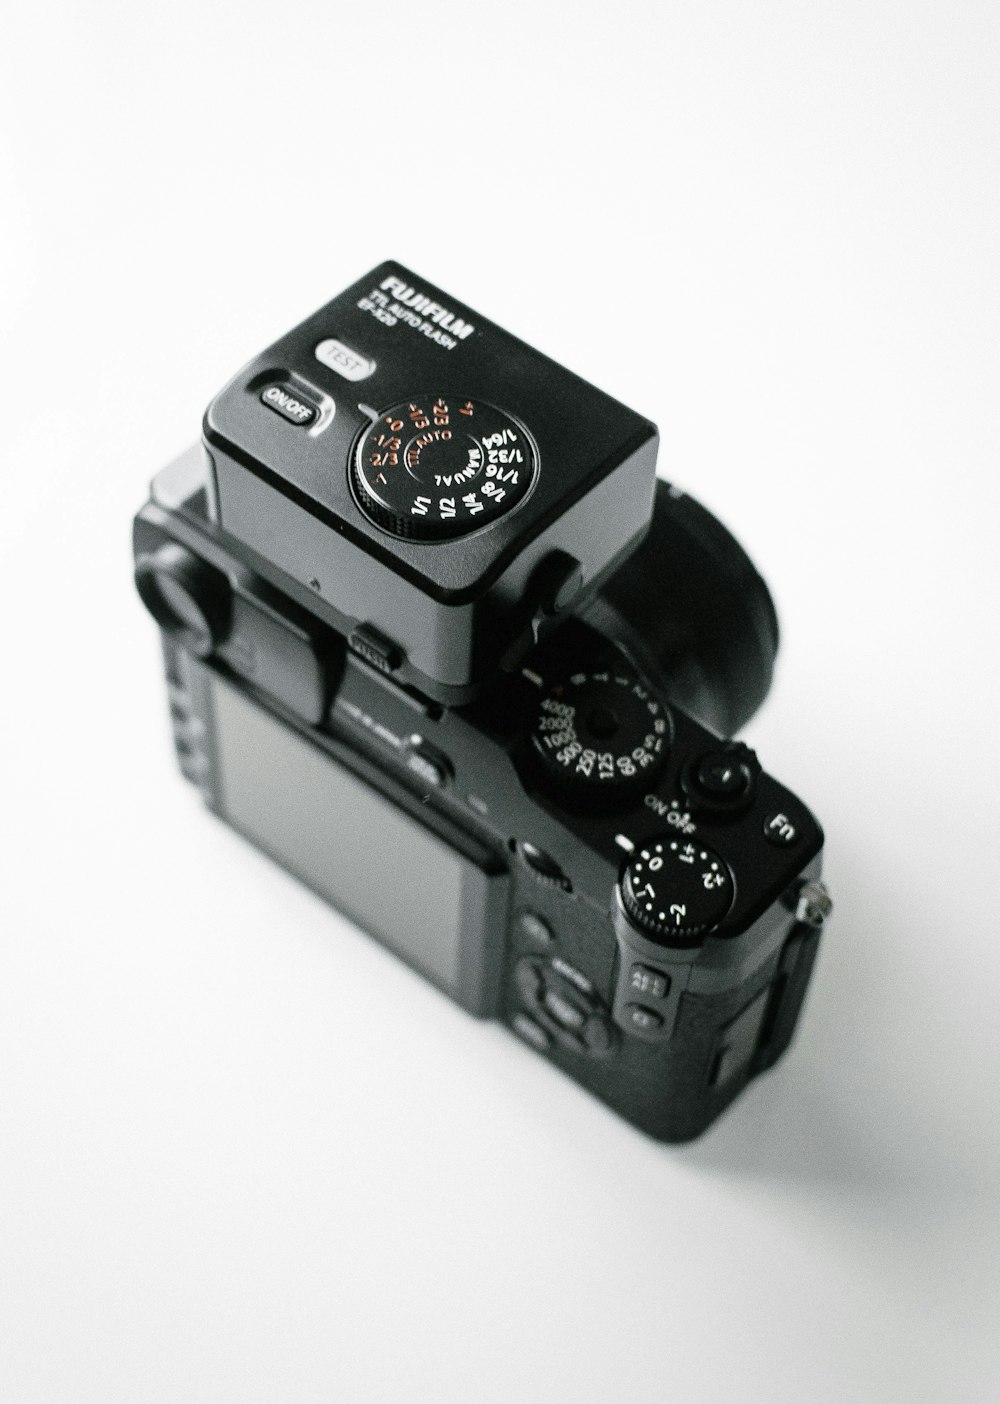 schwarze Fujifilm DSLR-Kamera